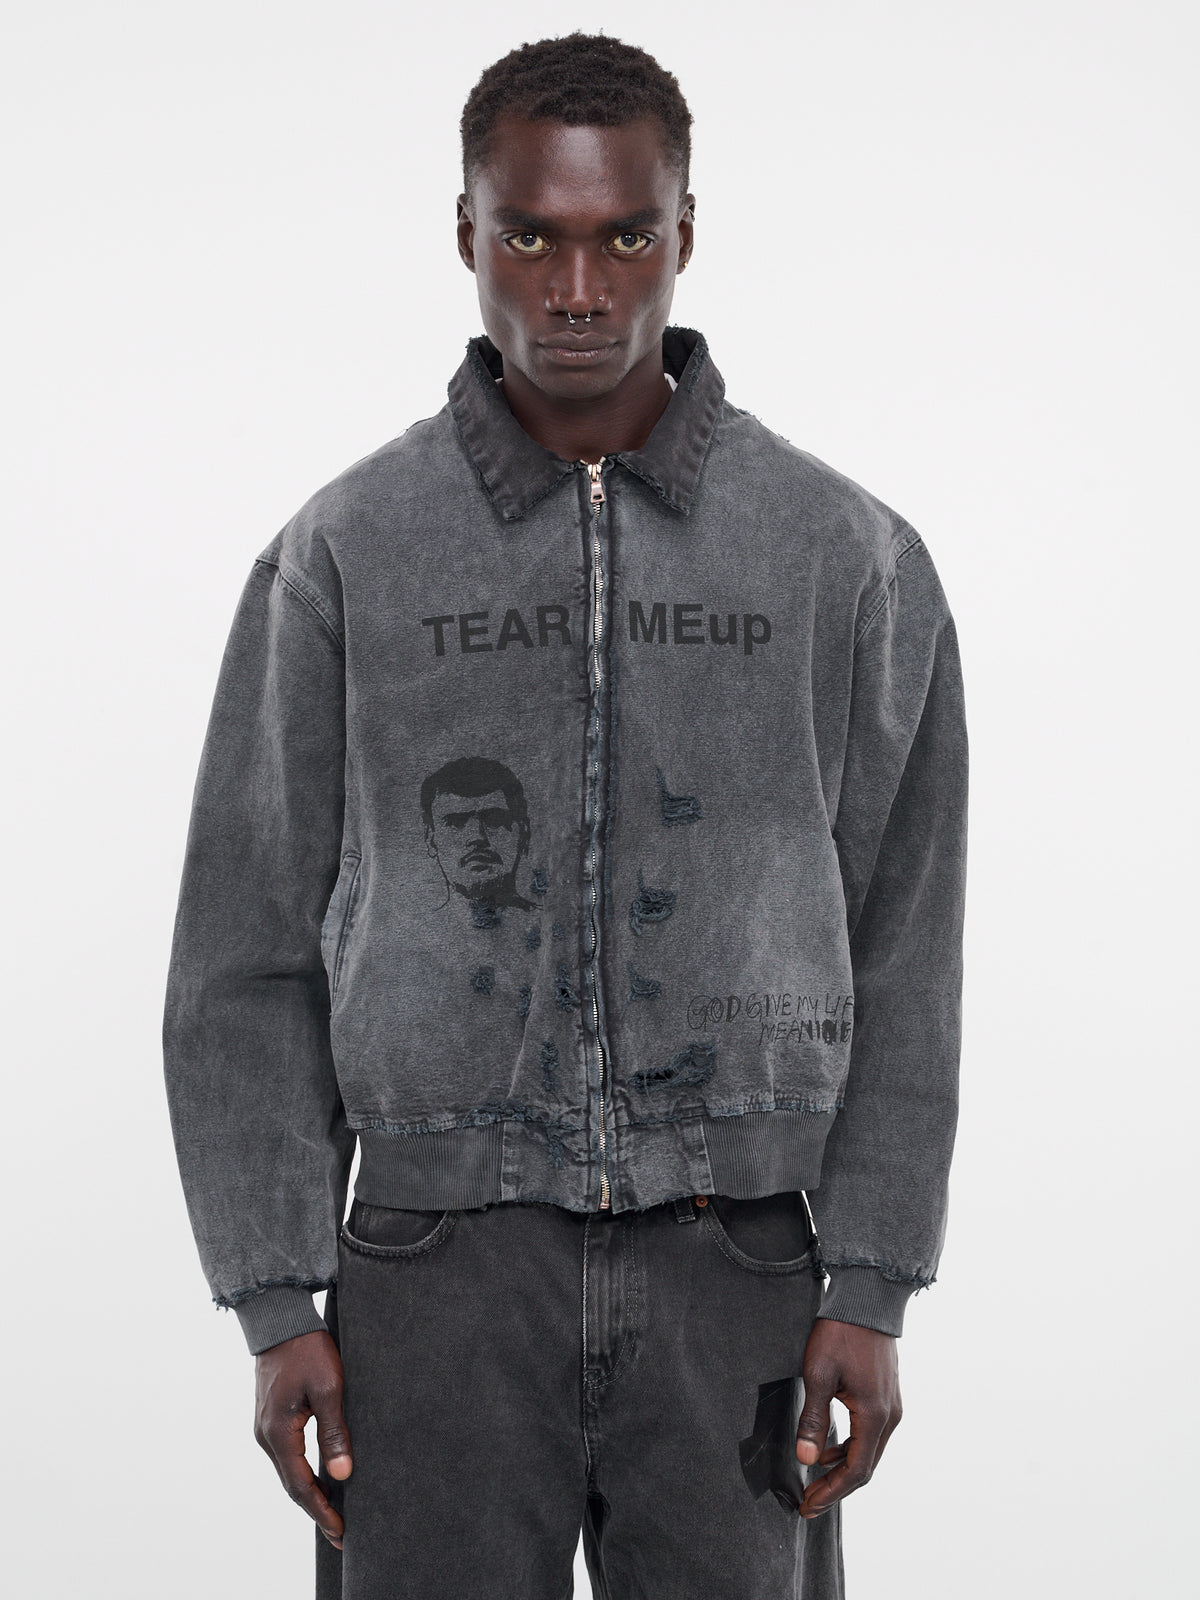 Tear Meup Canvas Jacket (7UO24Q1005-BLACK)